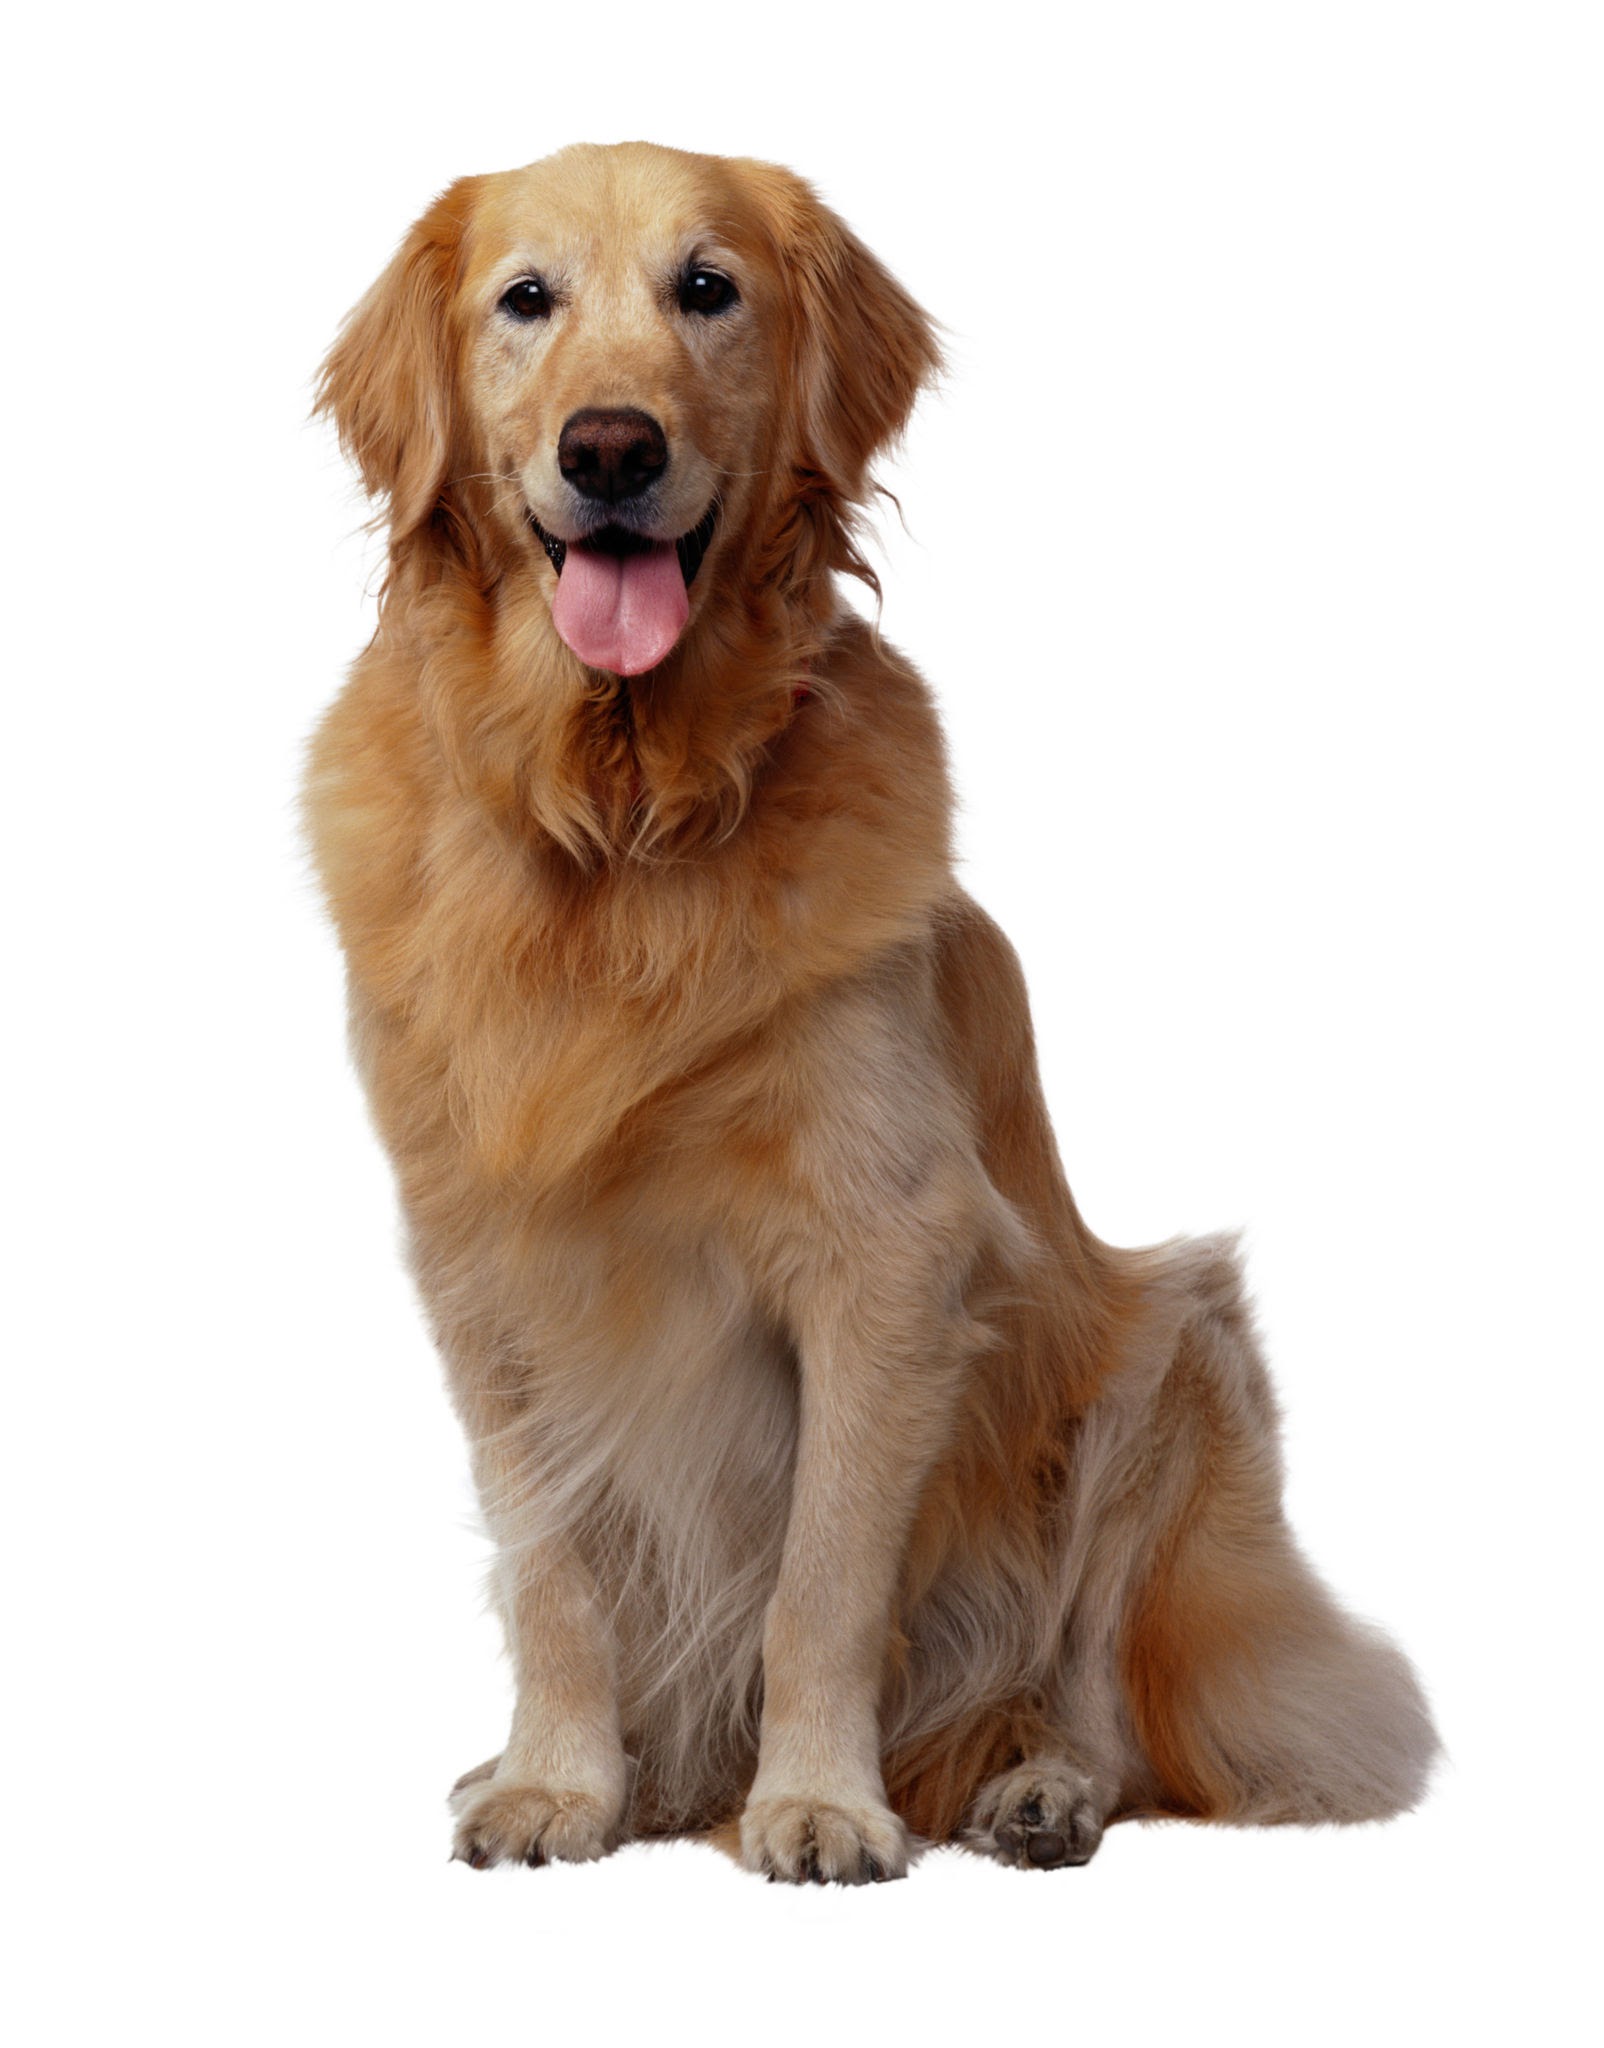   Anjing-anjing Mahal! Golden Retriever, Biaya Perawatan Sampai 10 Juta